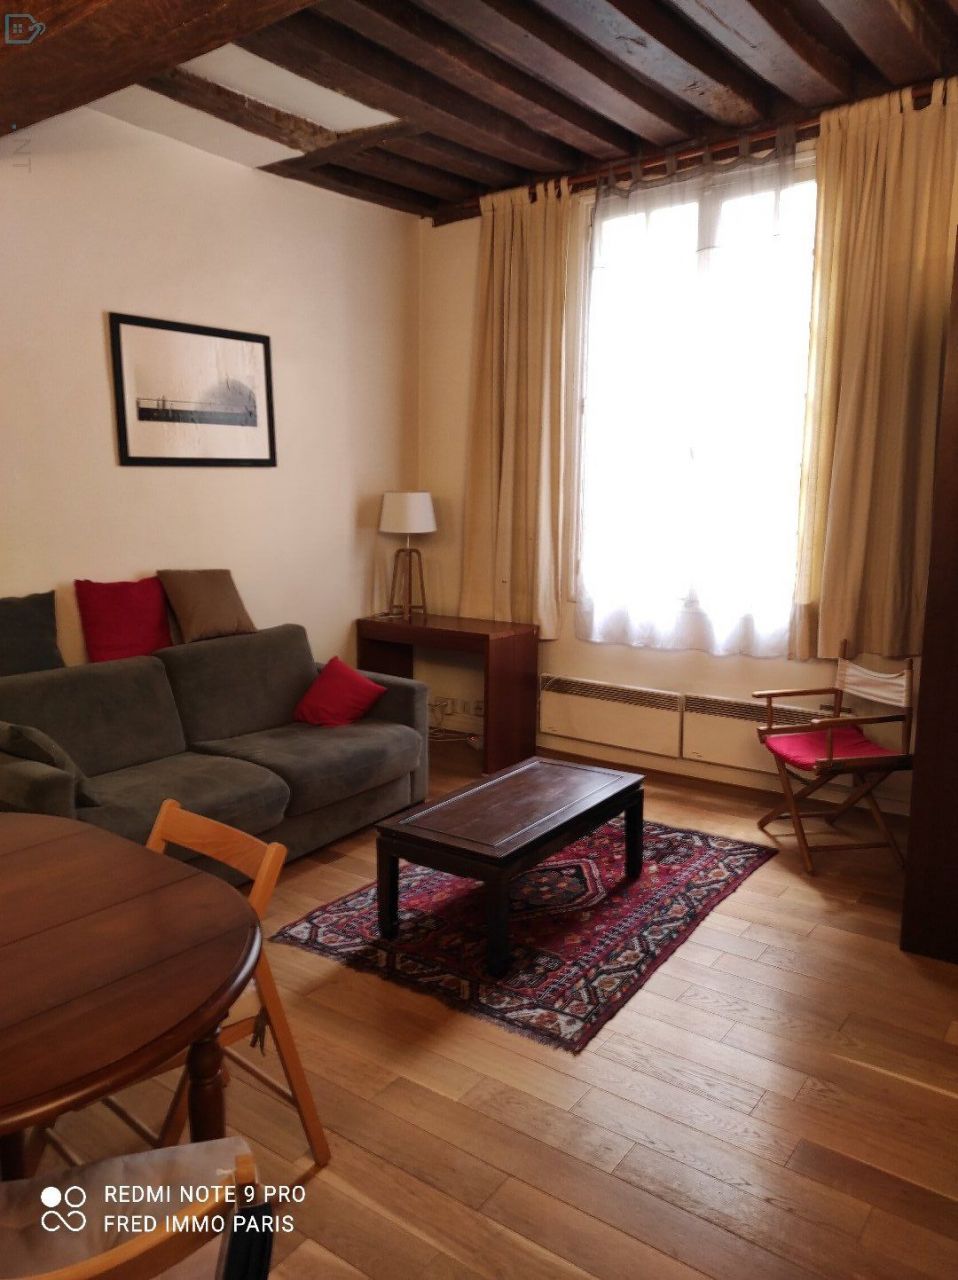 Apartment in Paris, France - picture 1